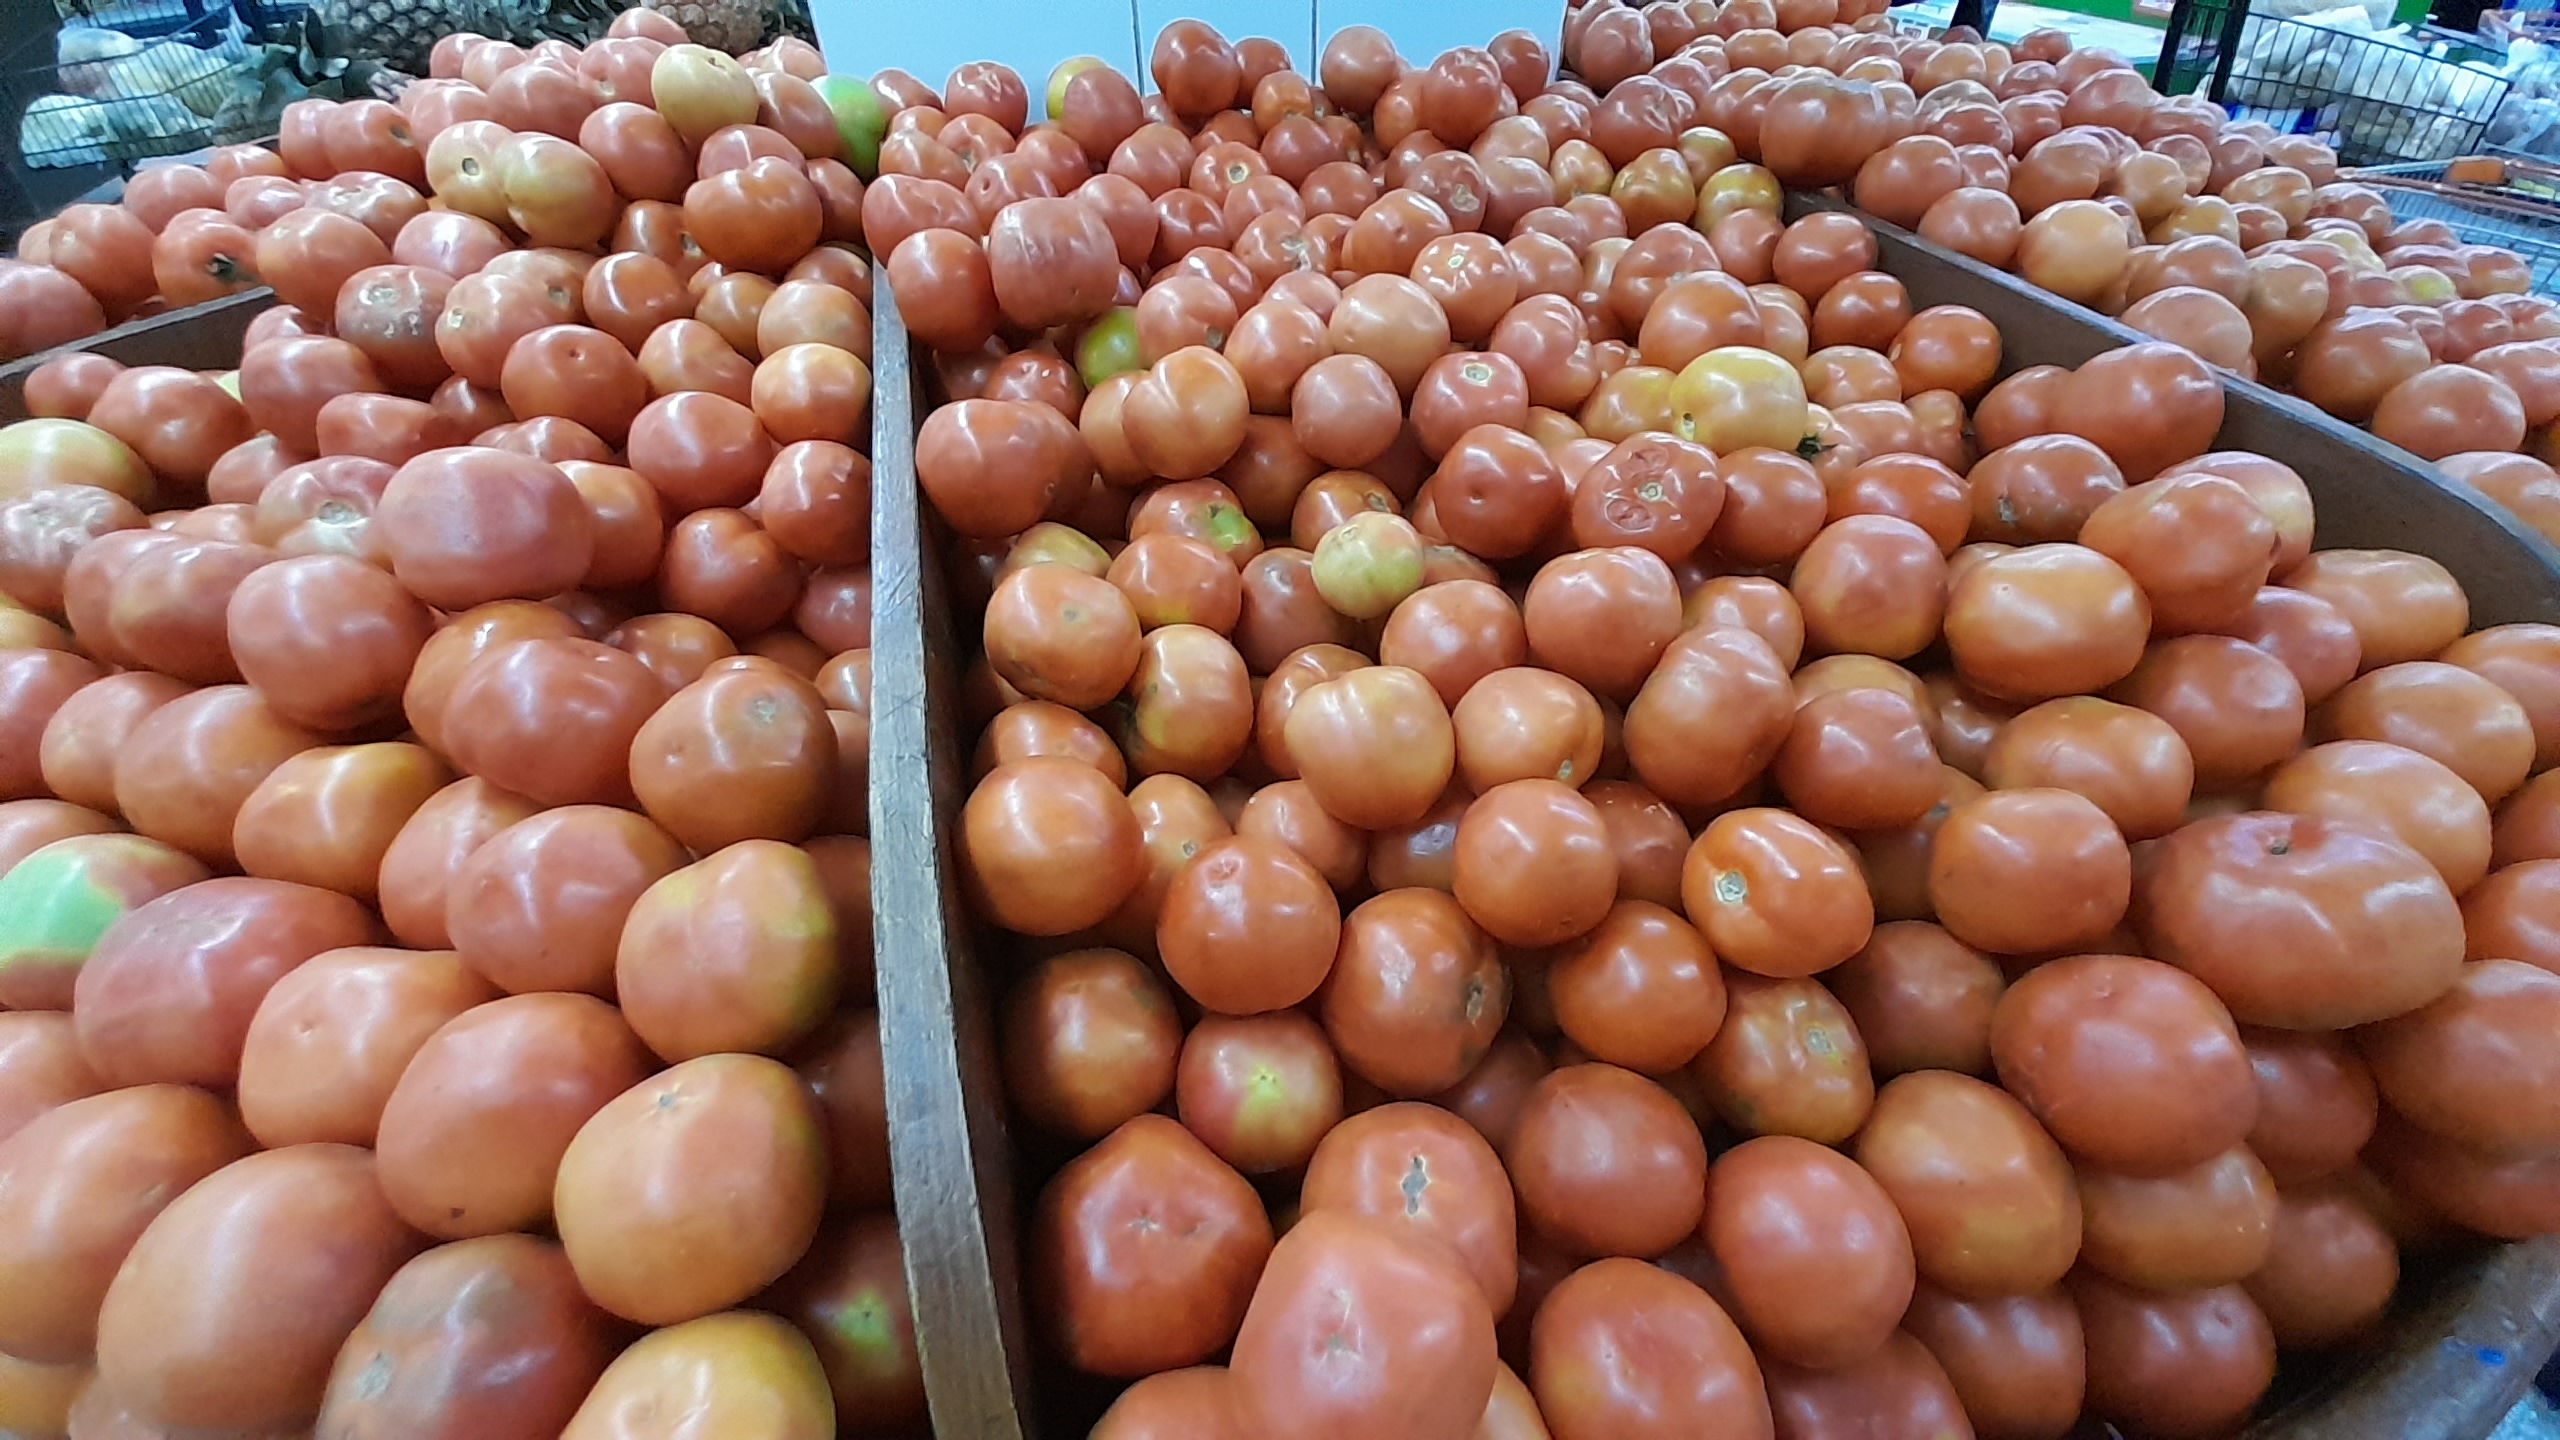 Producción se normalizó, pero tomate sigue caro: MAG conversará con Capasu